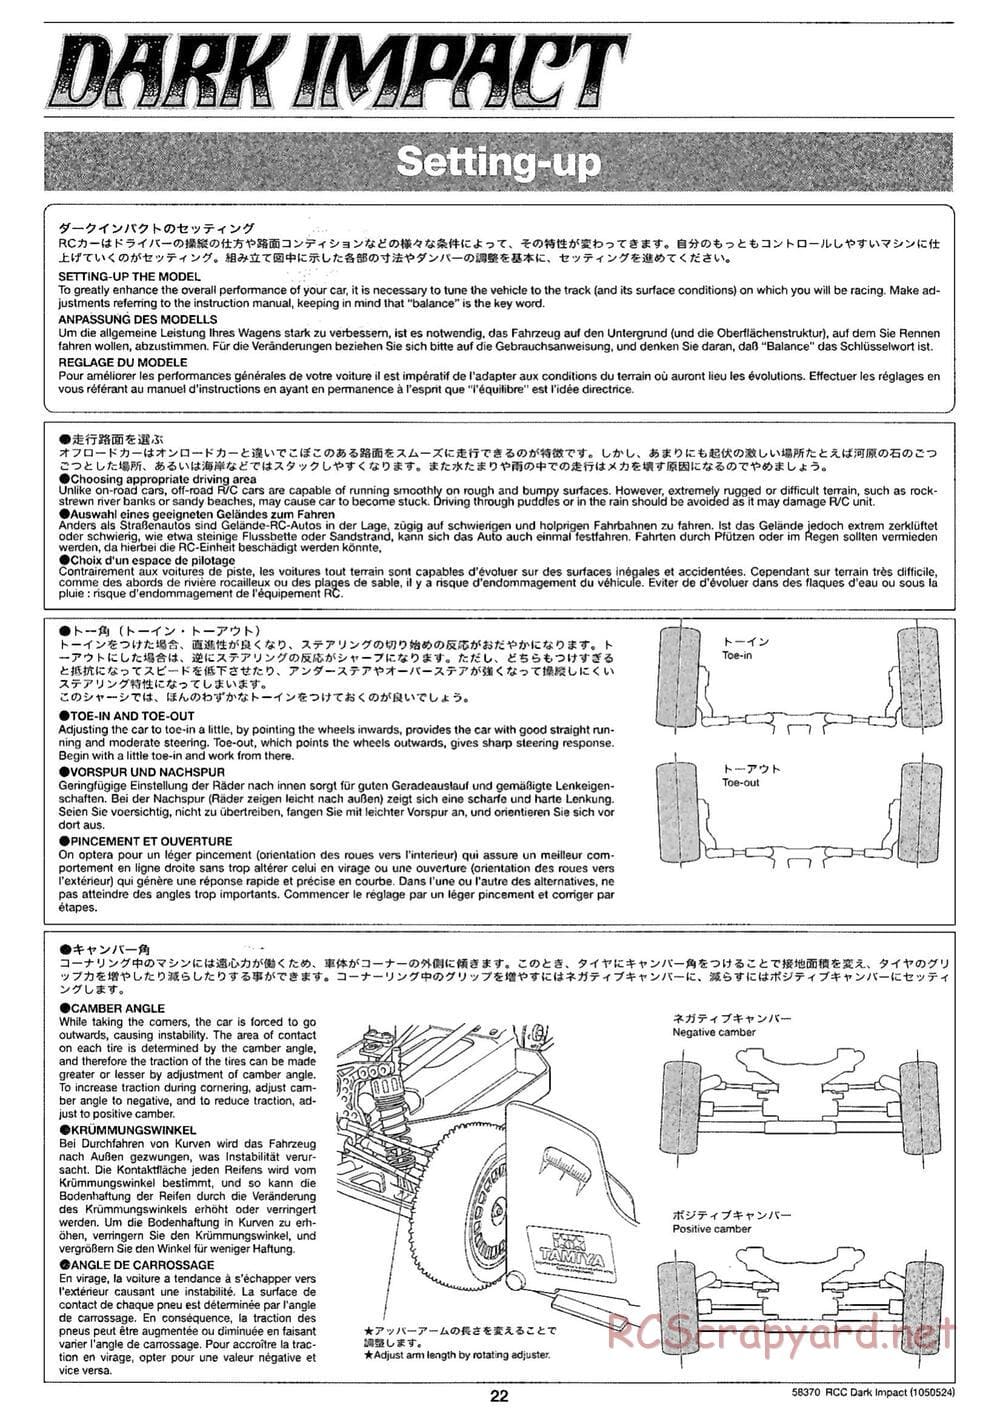 Tamiya - Dark Impact Chassis - Manual - Page 22